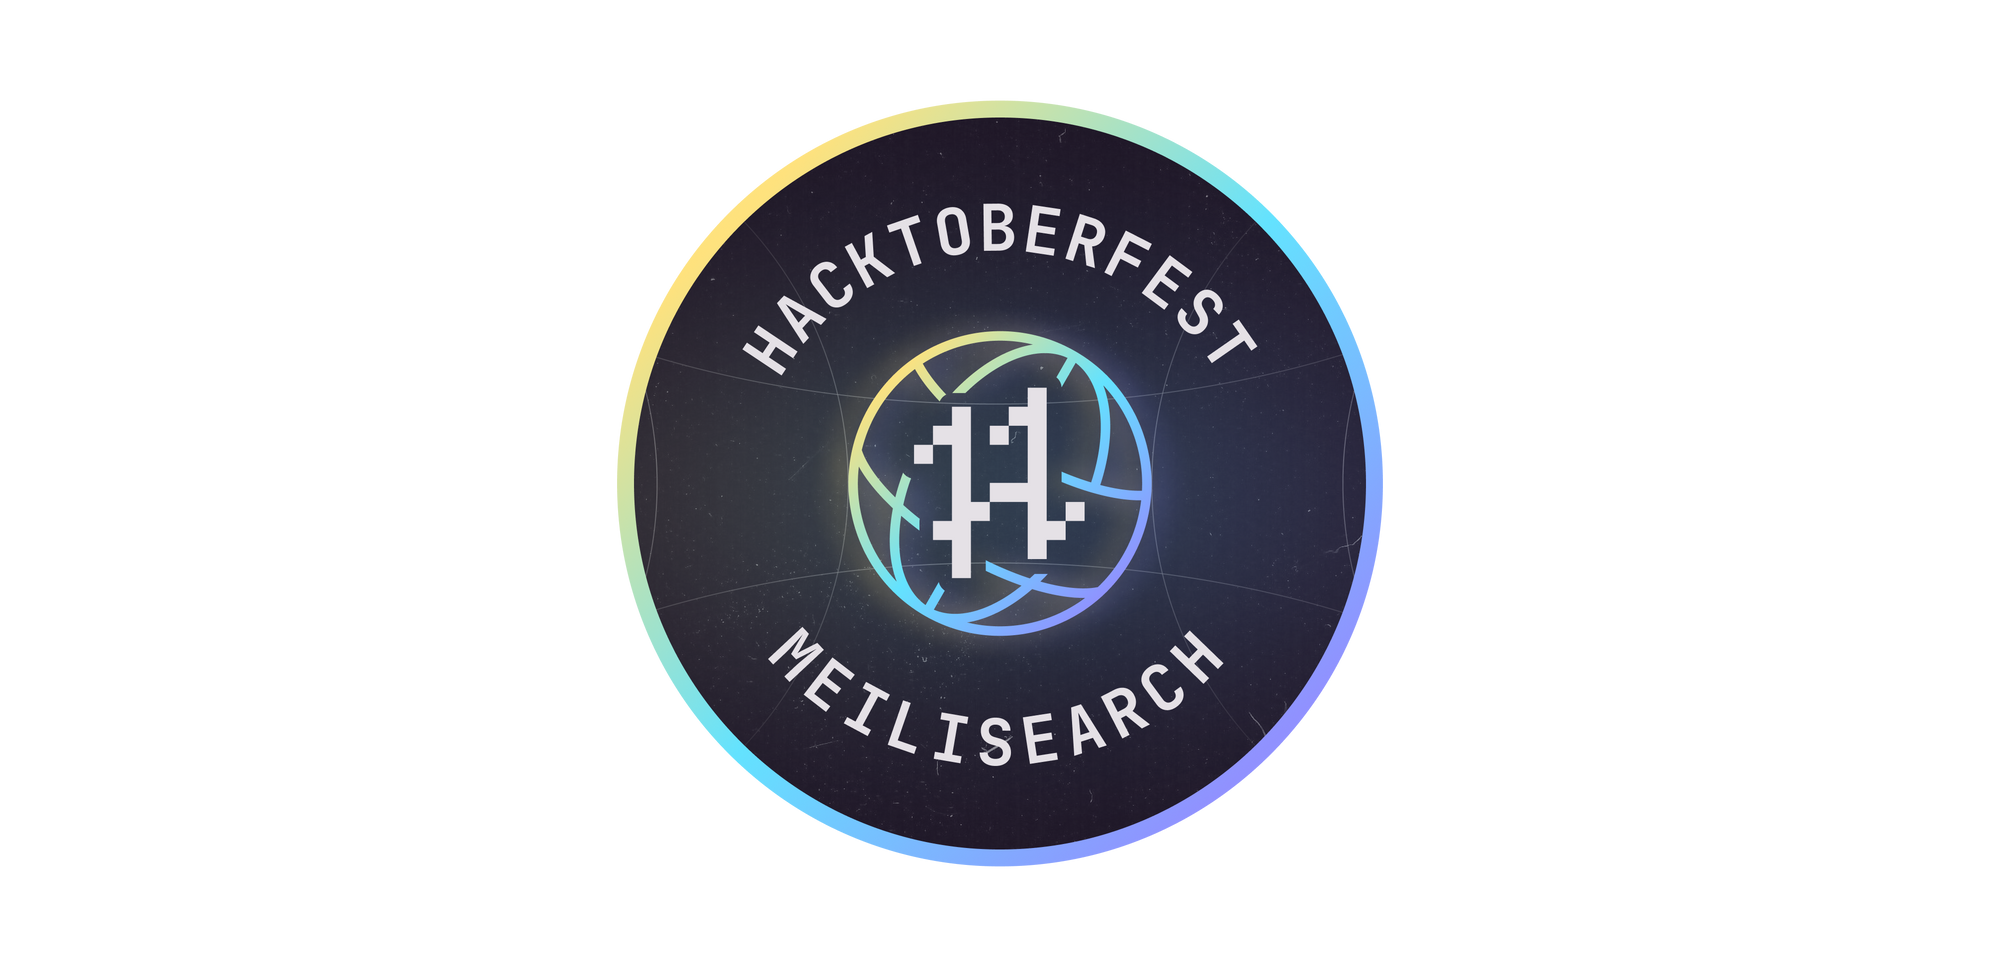 Hacktoberfest x Meilisearch crossover logo